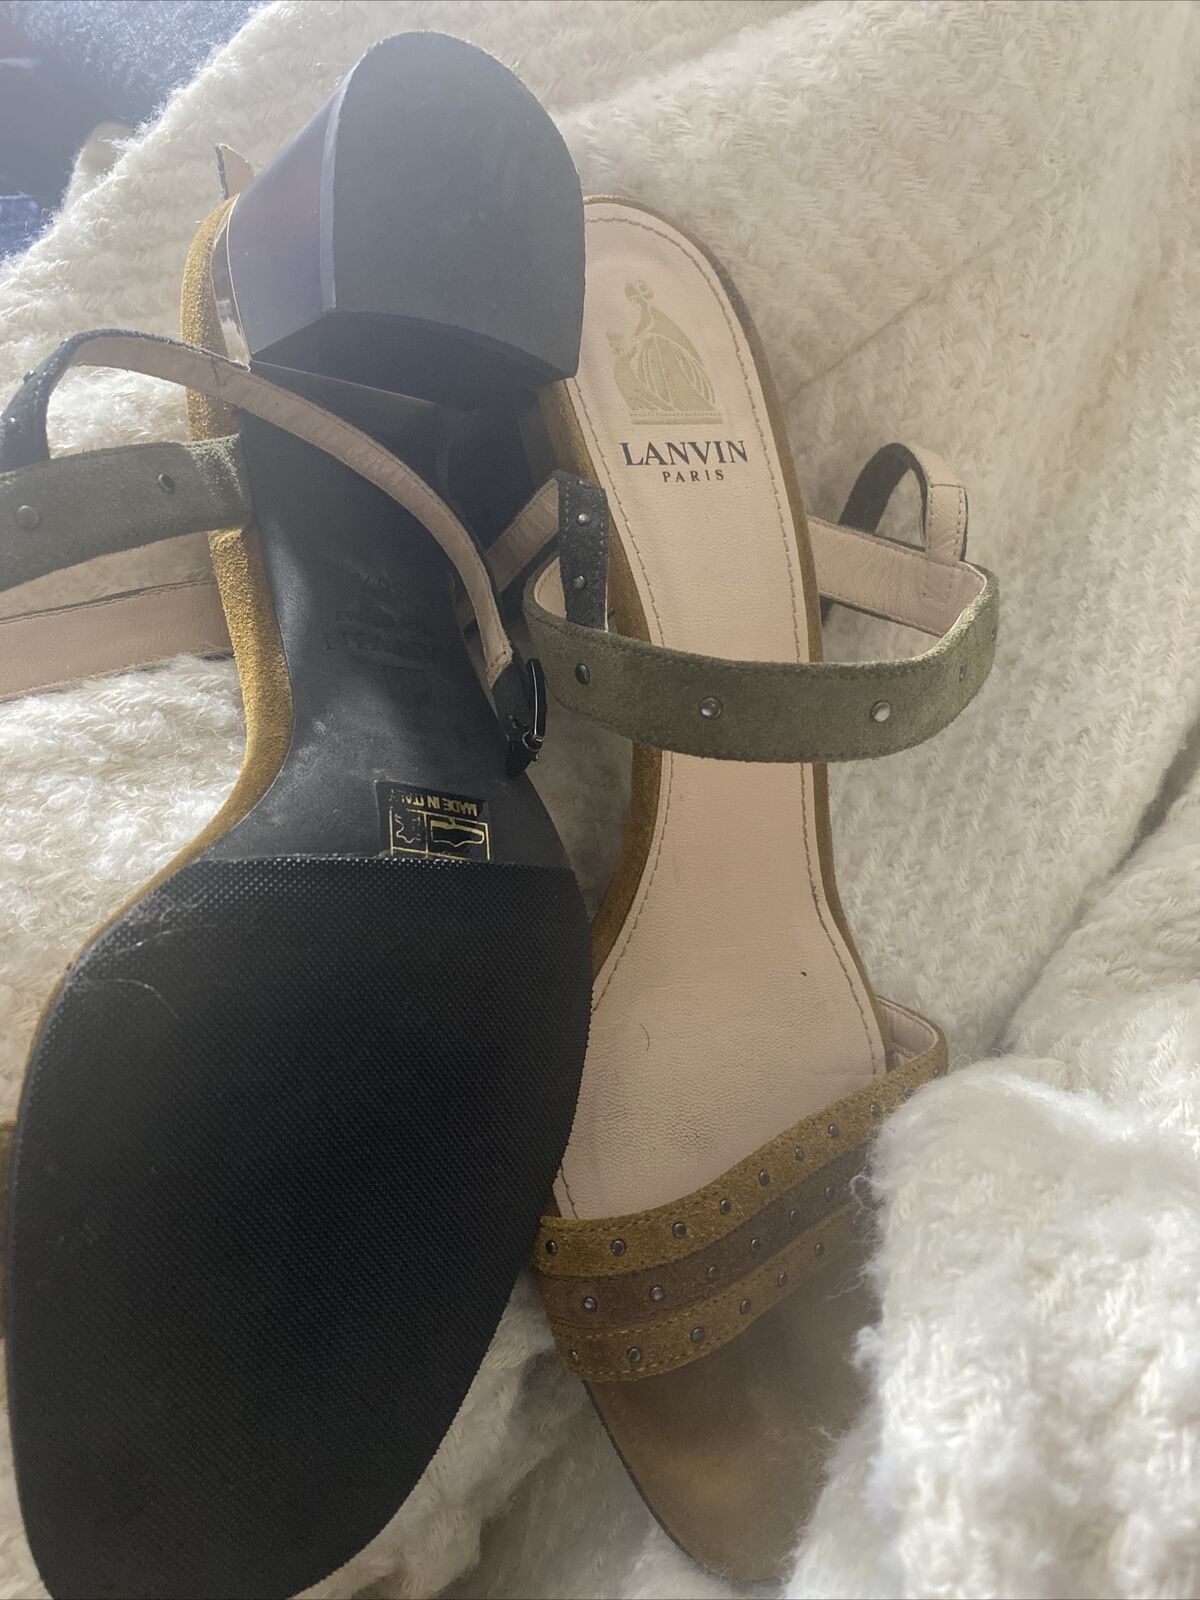 Lanvin Camel And Olive suede Mini Studded Sandals Med Heel Shoes Size 38 1/2 | eBay US